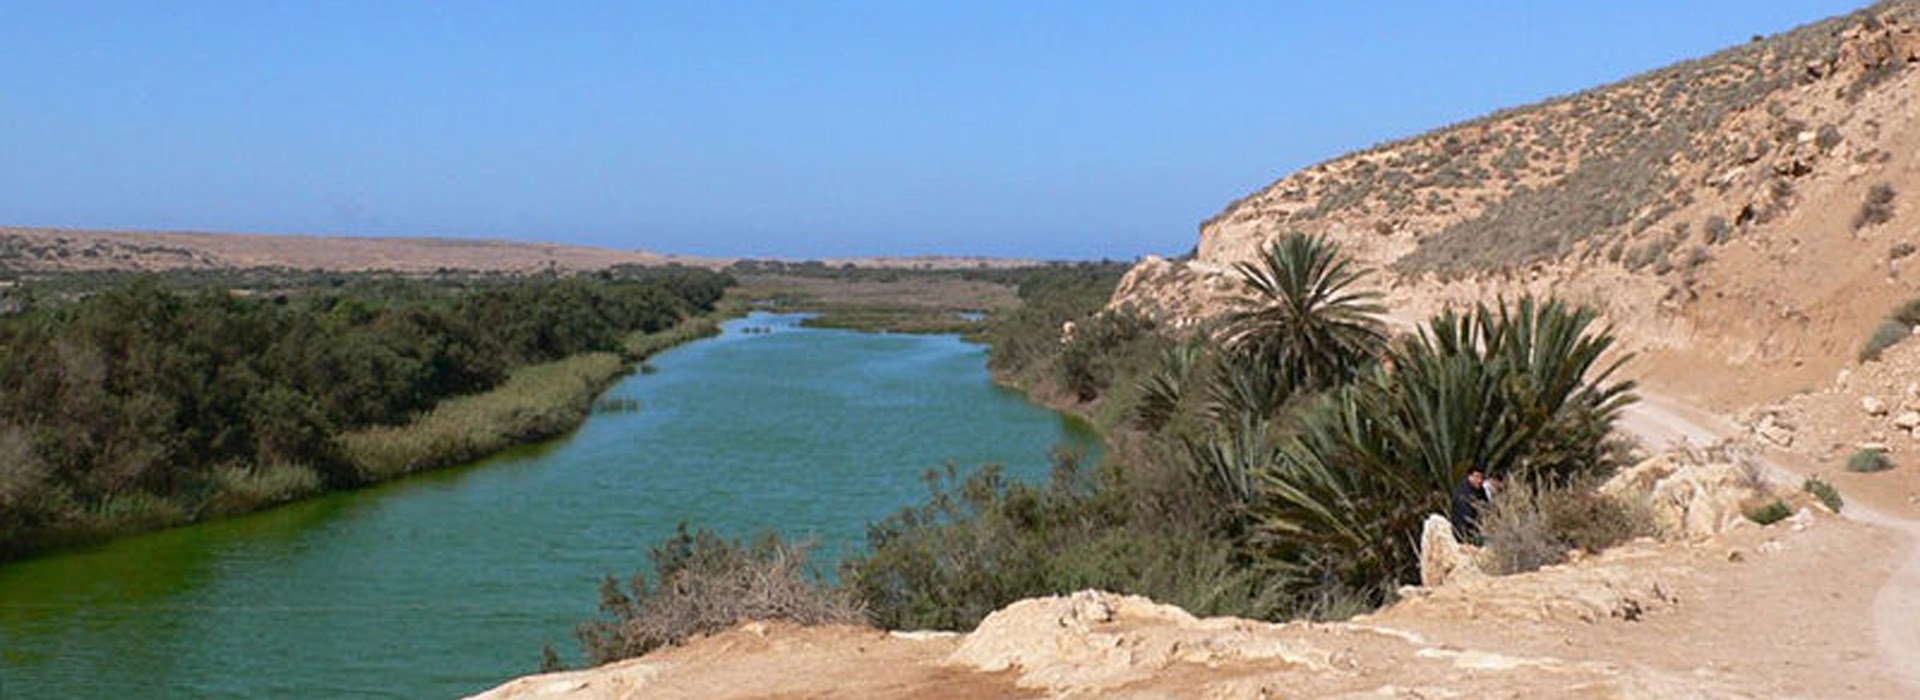 Visiter Le parc national de Souss Massa - Maroc